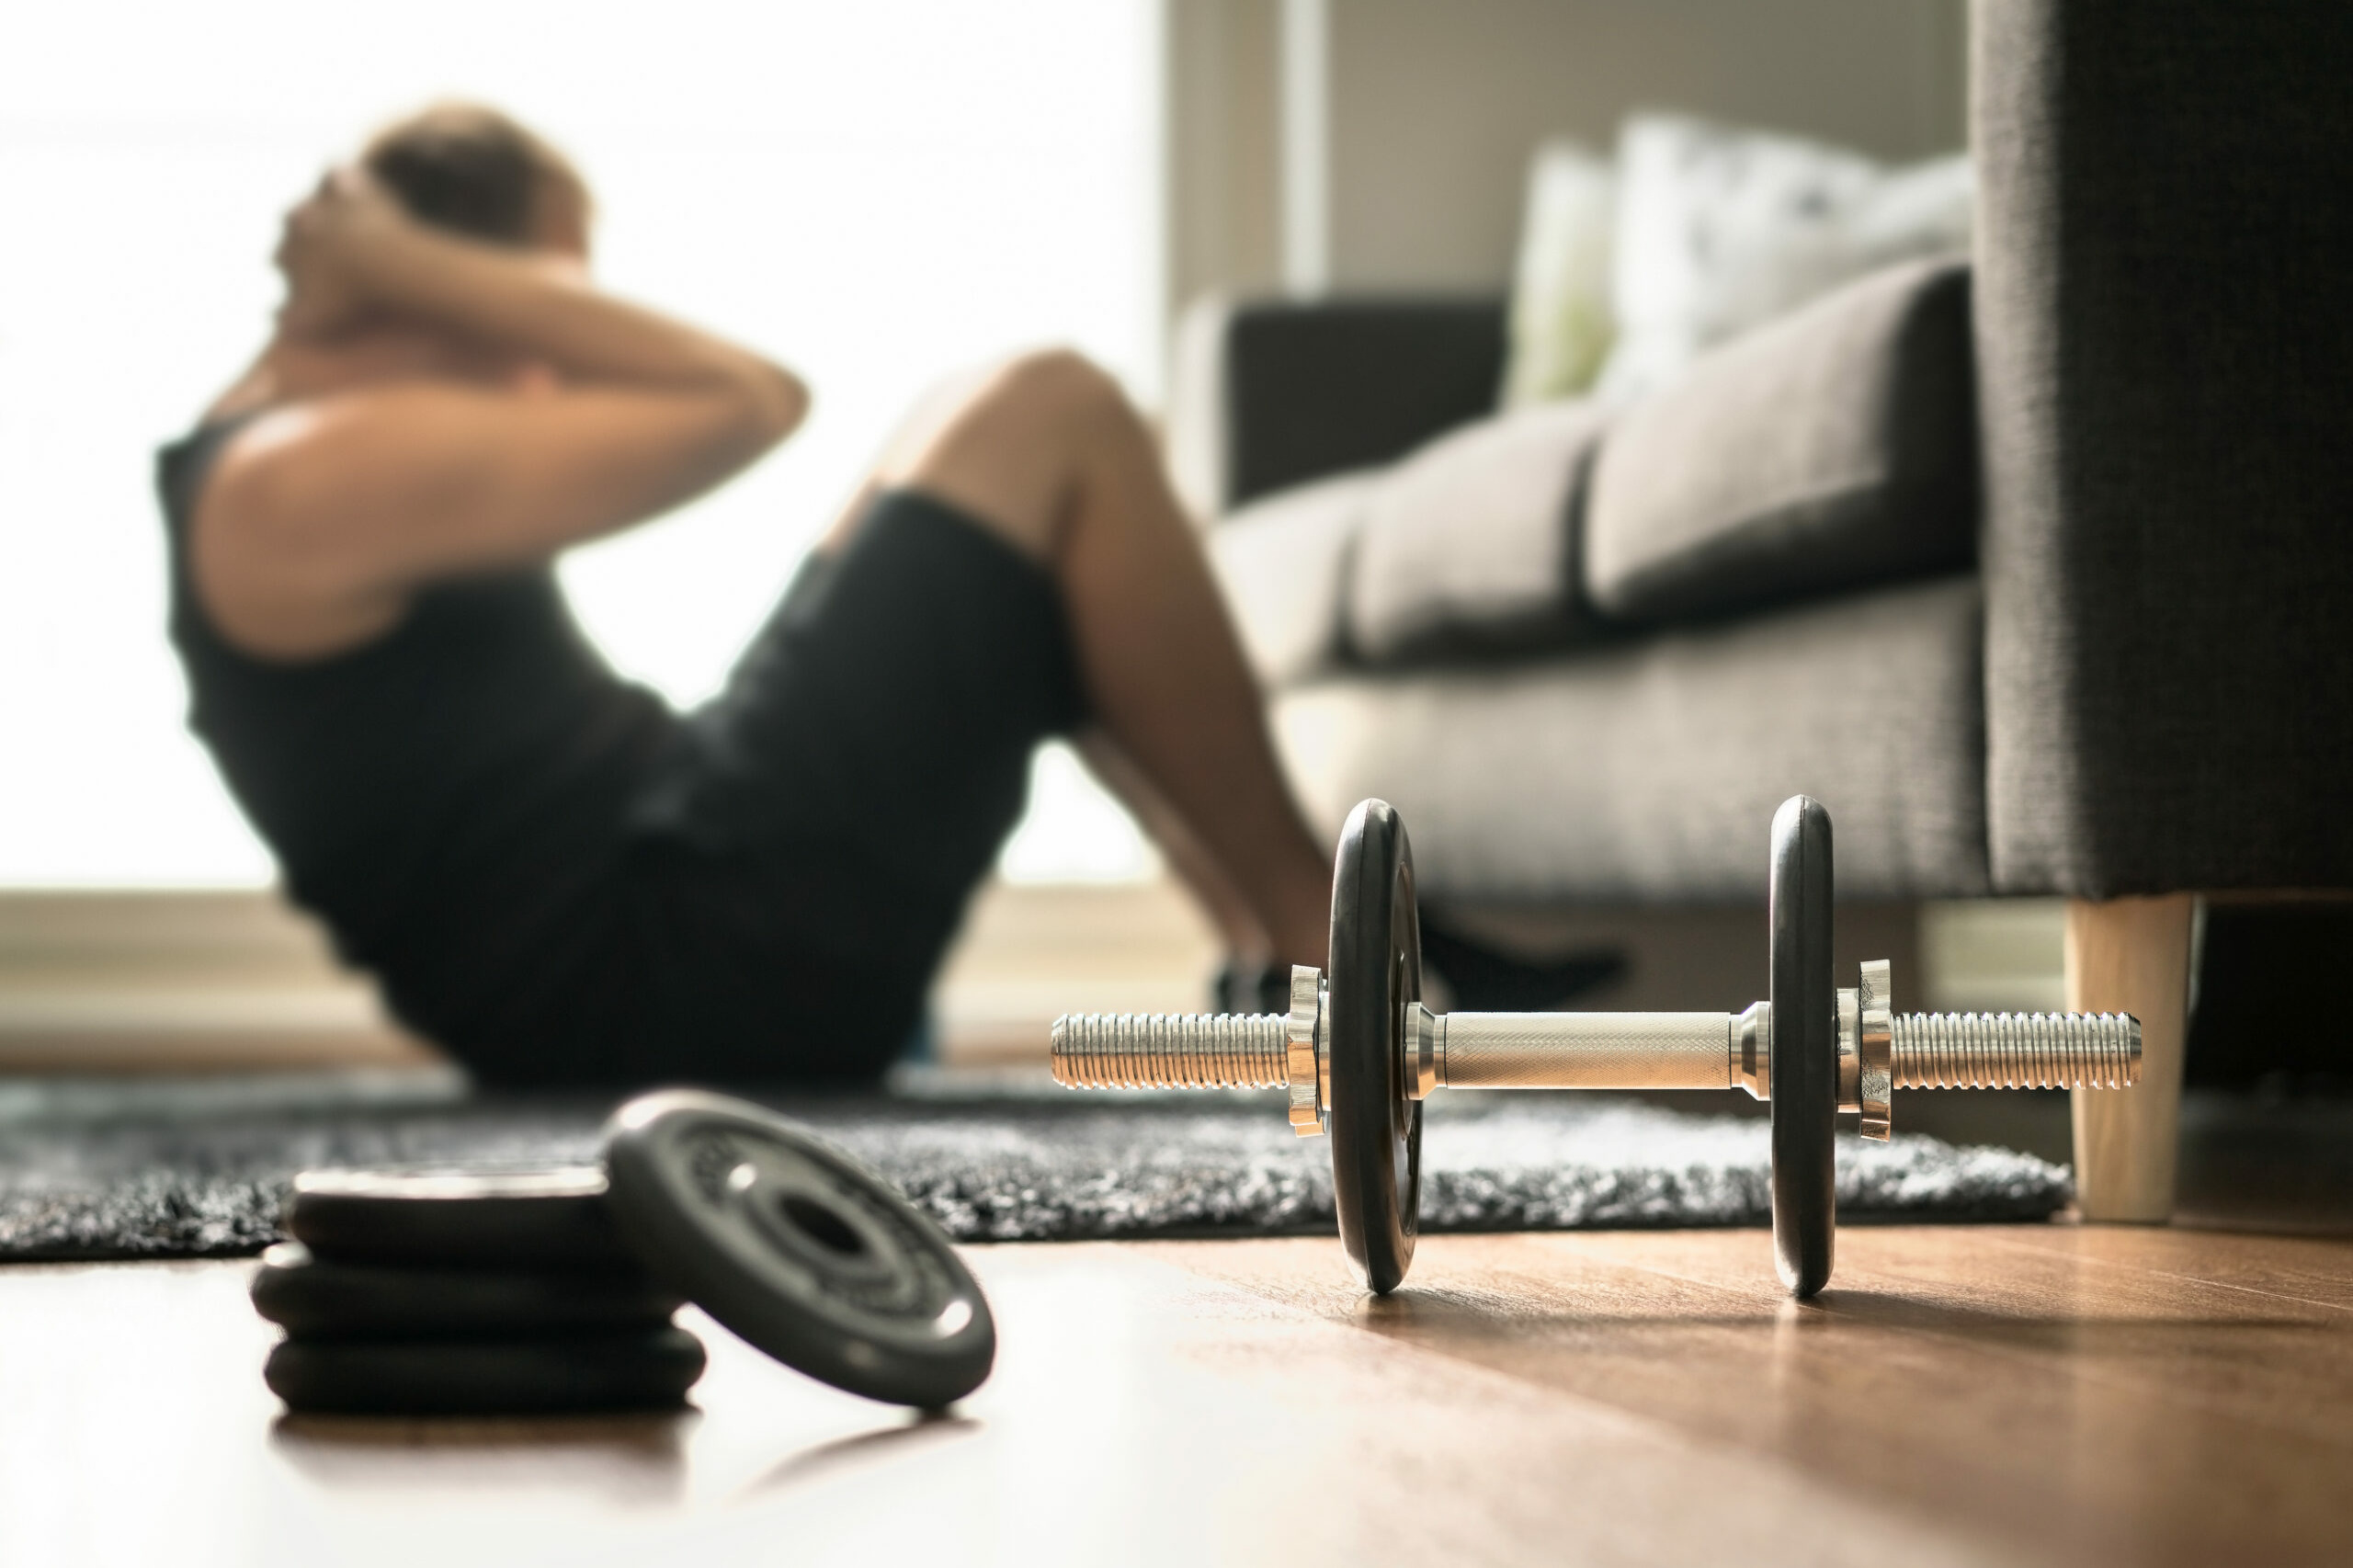 Krafttraining: Ein Mann trainiert Crunches im Wohnzimmer. Neben ihm liegt eine Hantel mit Gewichten zum Workout.